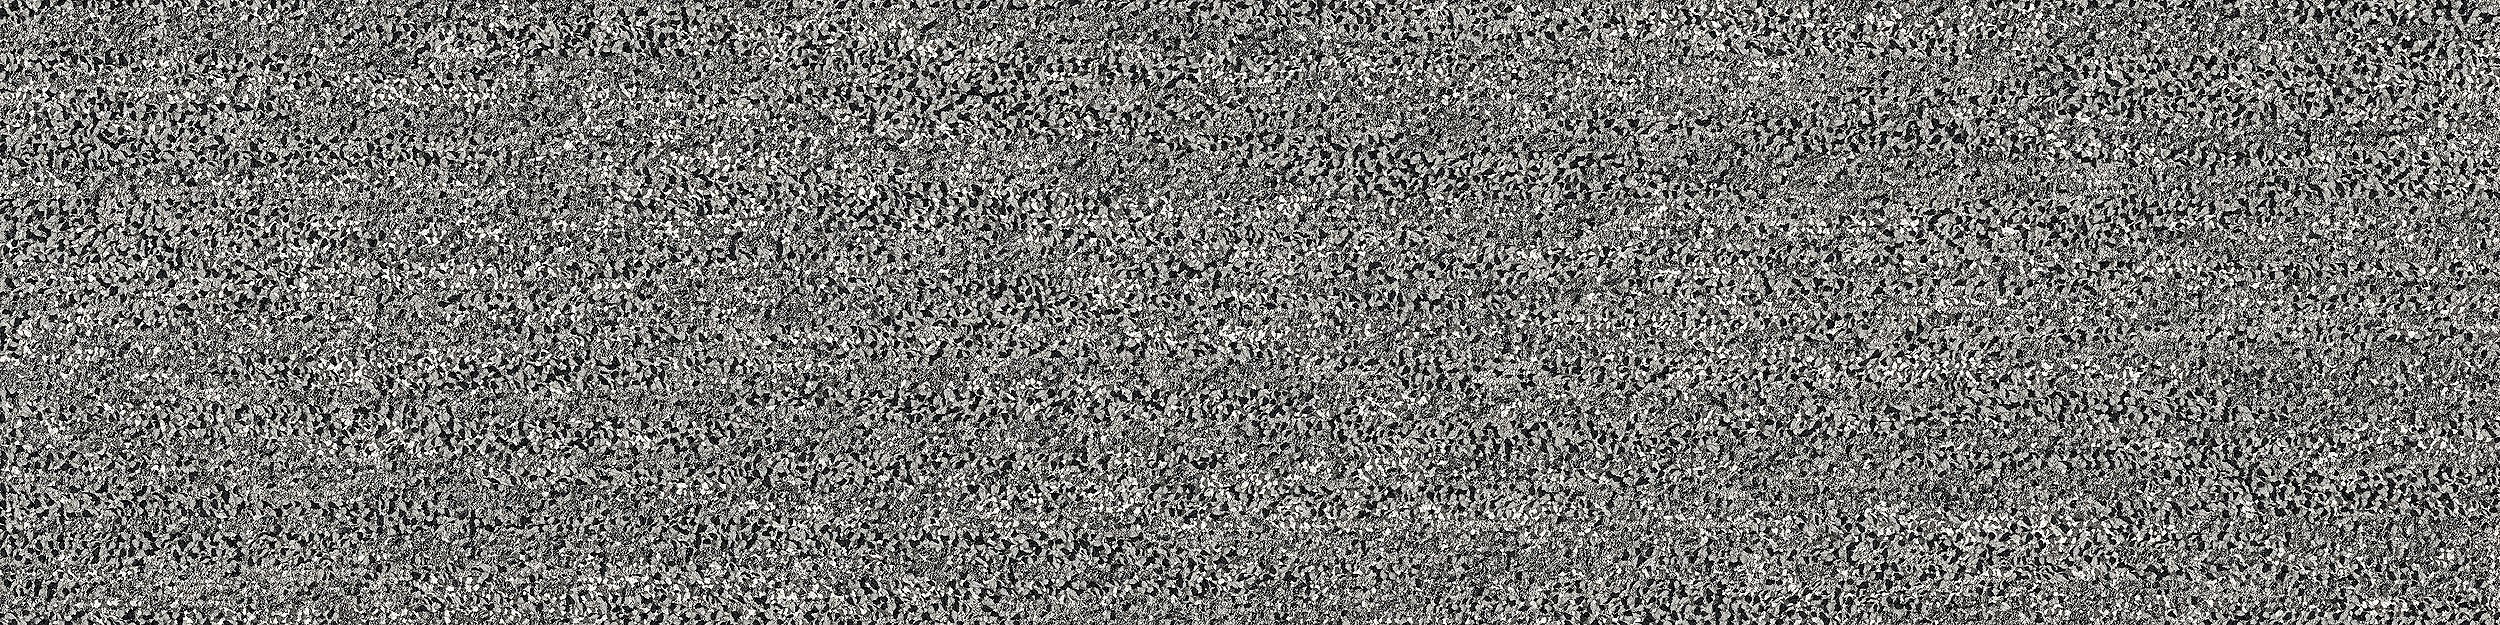 Mantle Rock Carpet Tile In Grey Stone numéro d’image 7